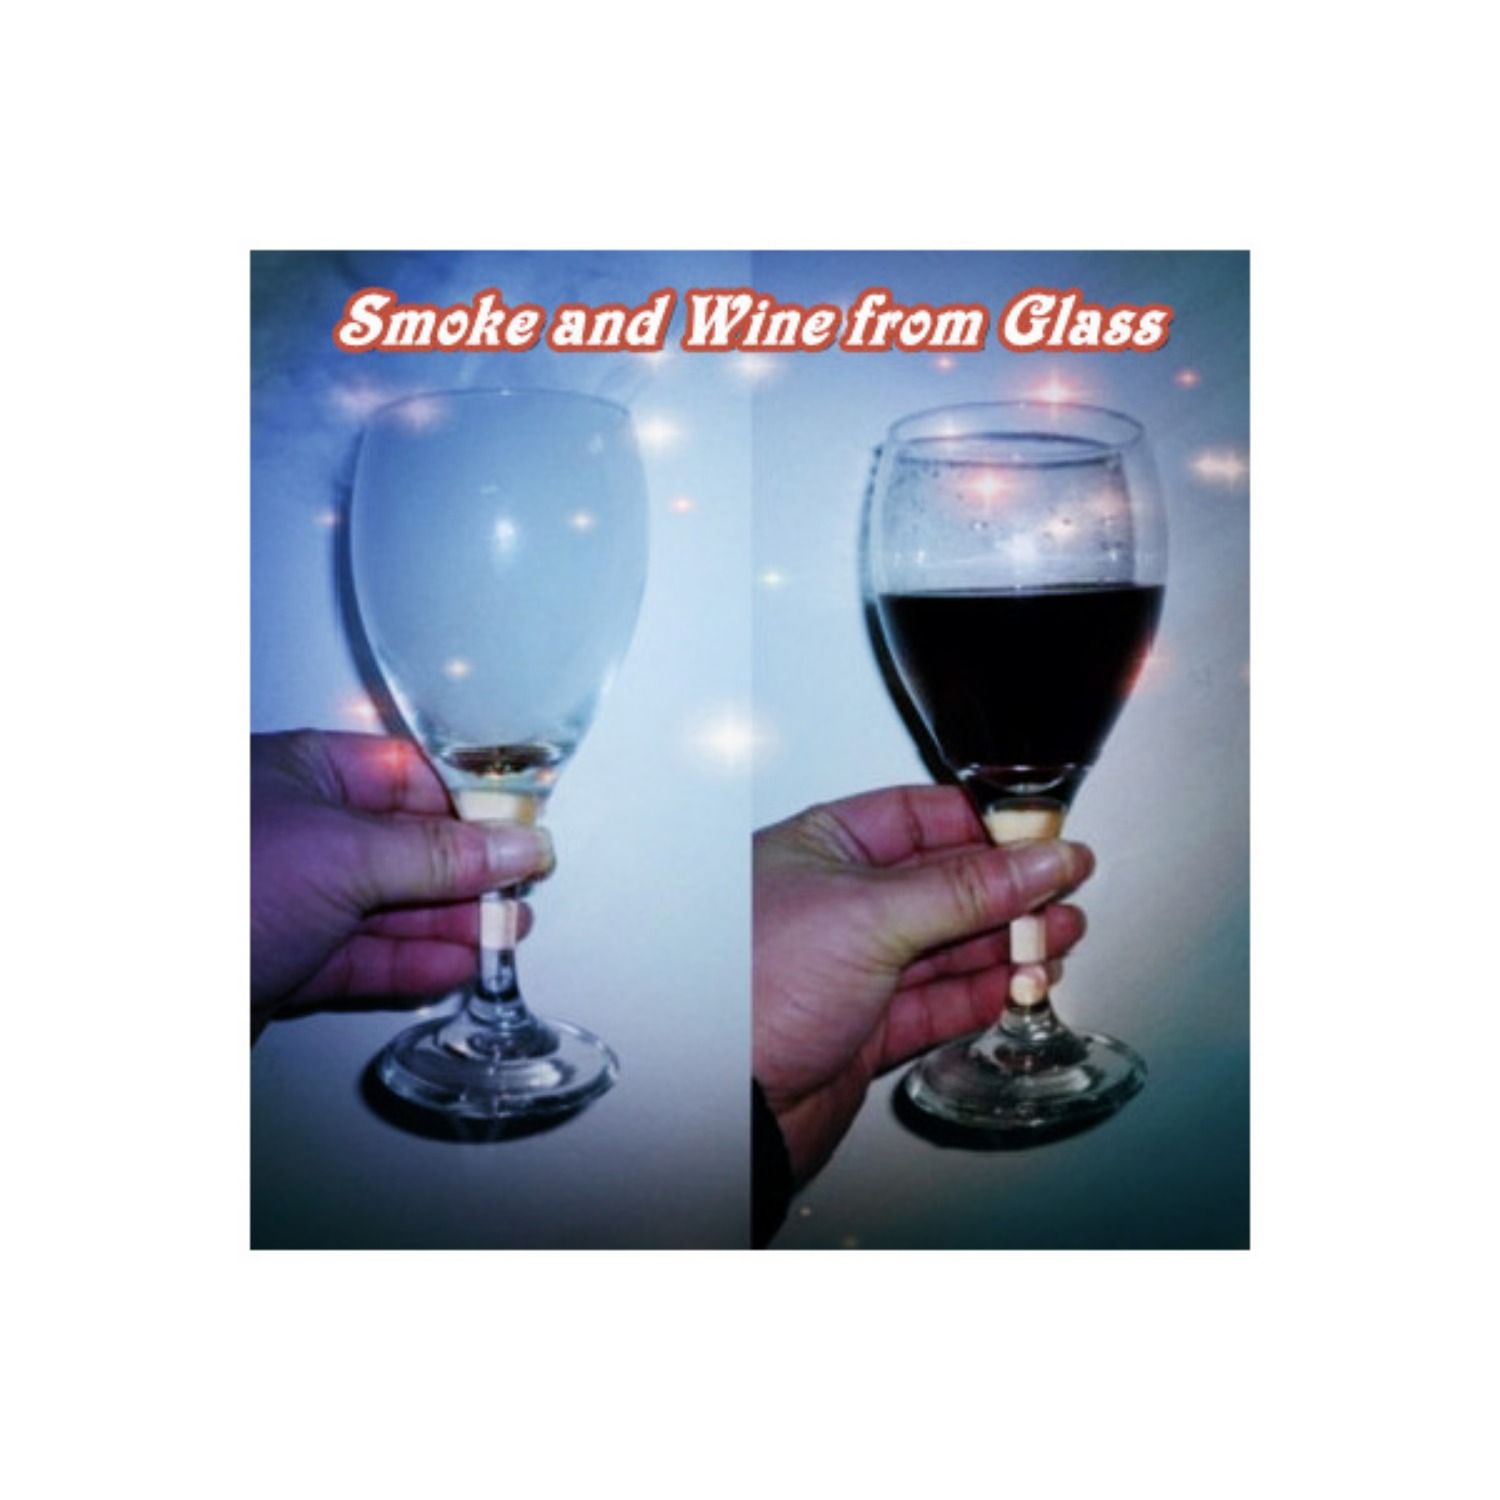 [스모크앤와인] Smoke and Wine from Glass 비어있는 와인잔에서 안개가 나타나고, 곧이어 와인이 채워집니다.